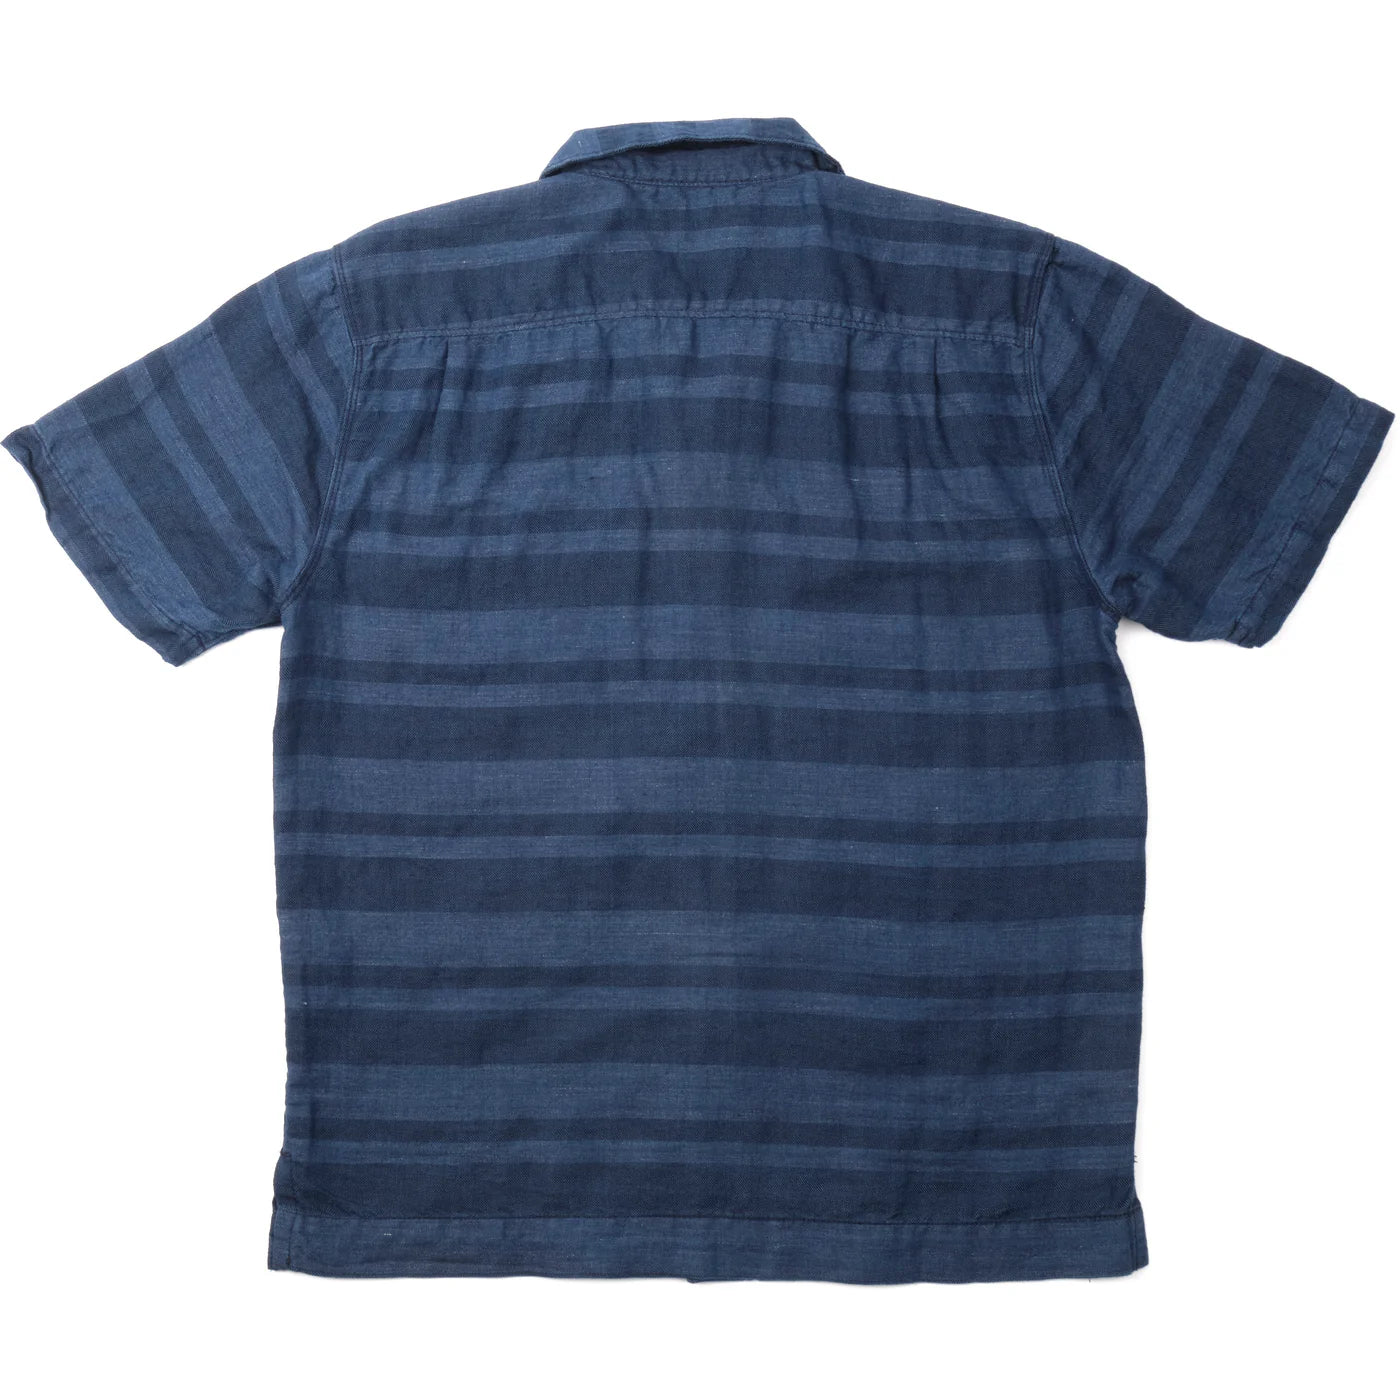 Freenote Cloth Cayucos Shirt - Indigo Stripe